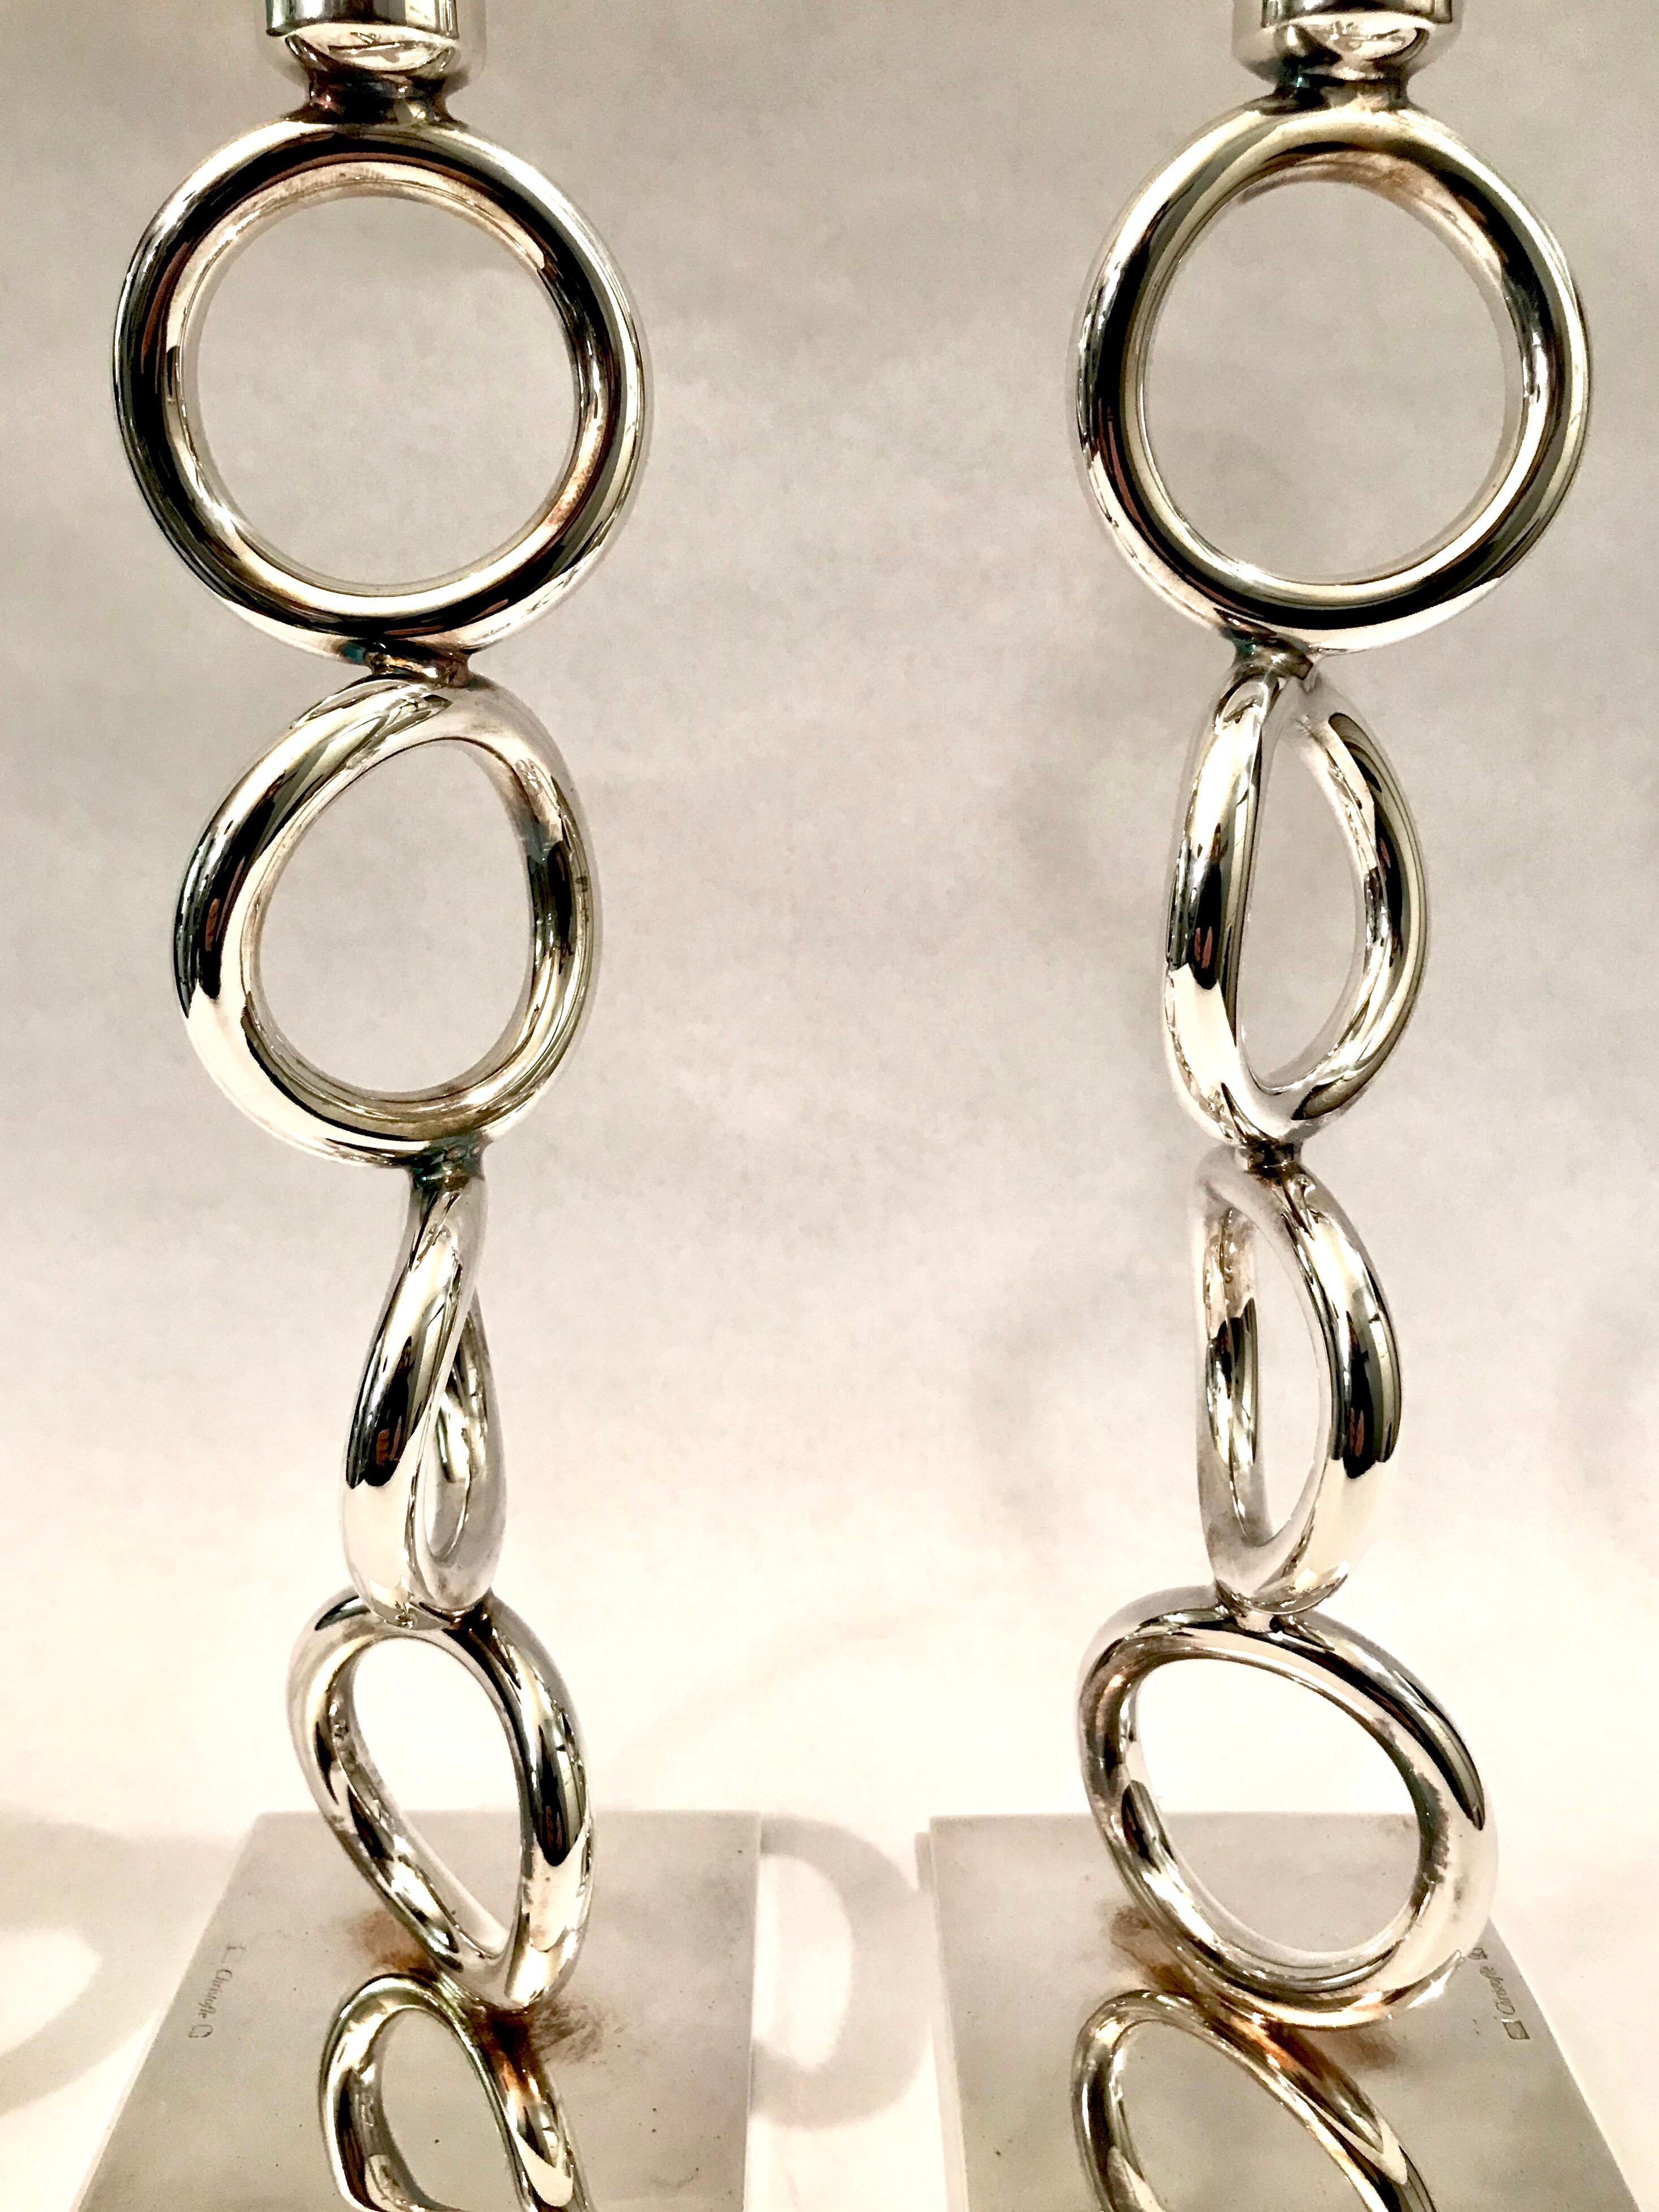 Christofle Silver Plated Vertigo Four-Ring Candlesticks For Sale 5